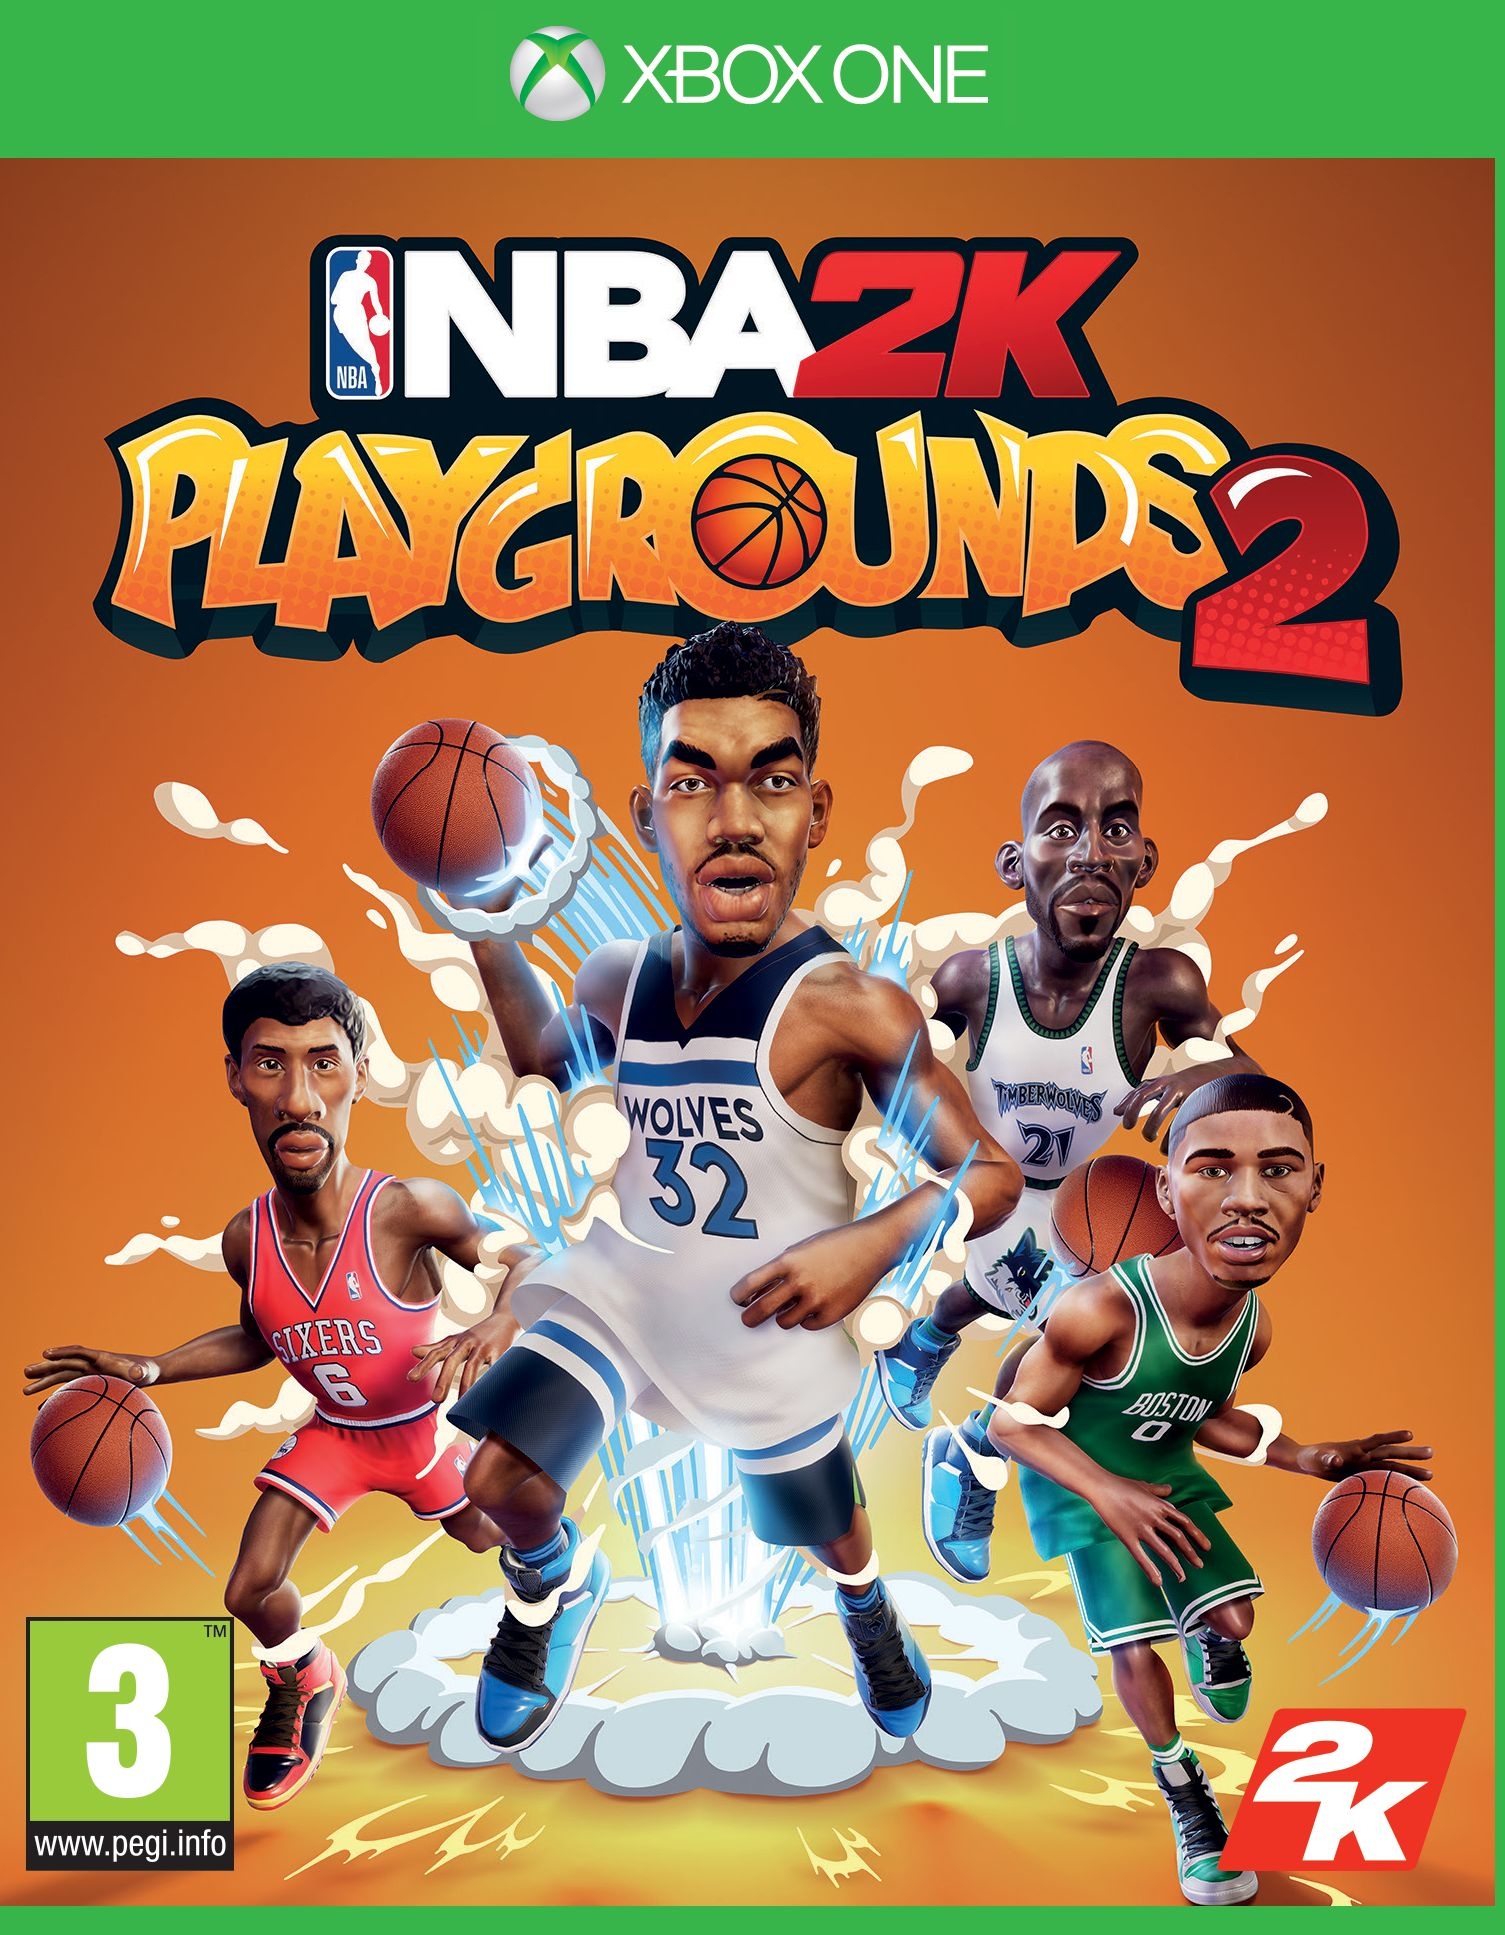 XBOXOne NBA 2K Playgrounds 2